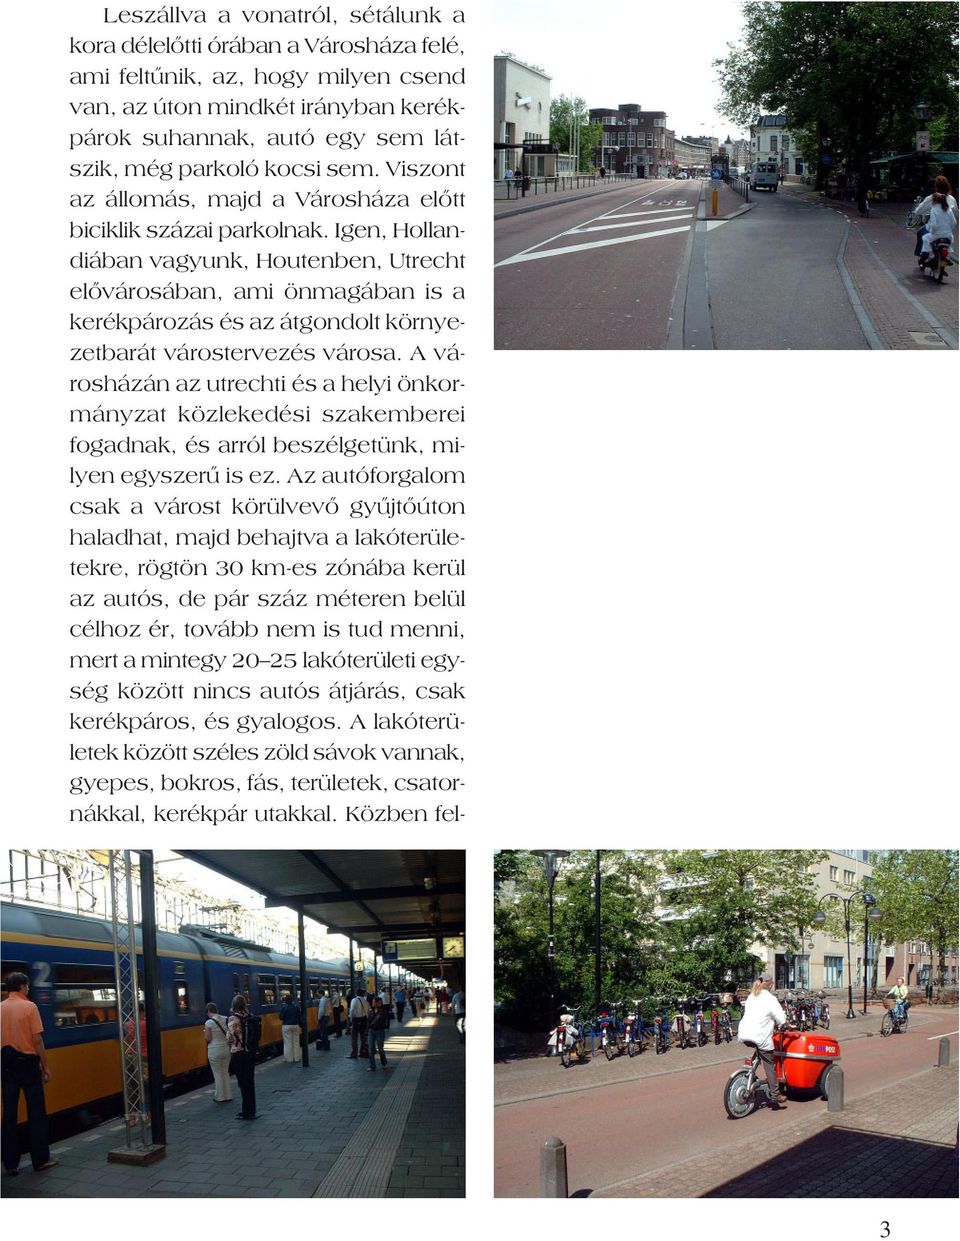 Igen, Hollandiában vagyunk, Houtenben, Utrecht elõvárosában, ami önmagában is a kerékpározás és az átgondolt környezetbarát várostervezés városa.